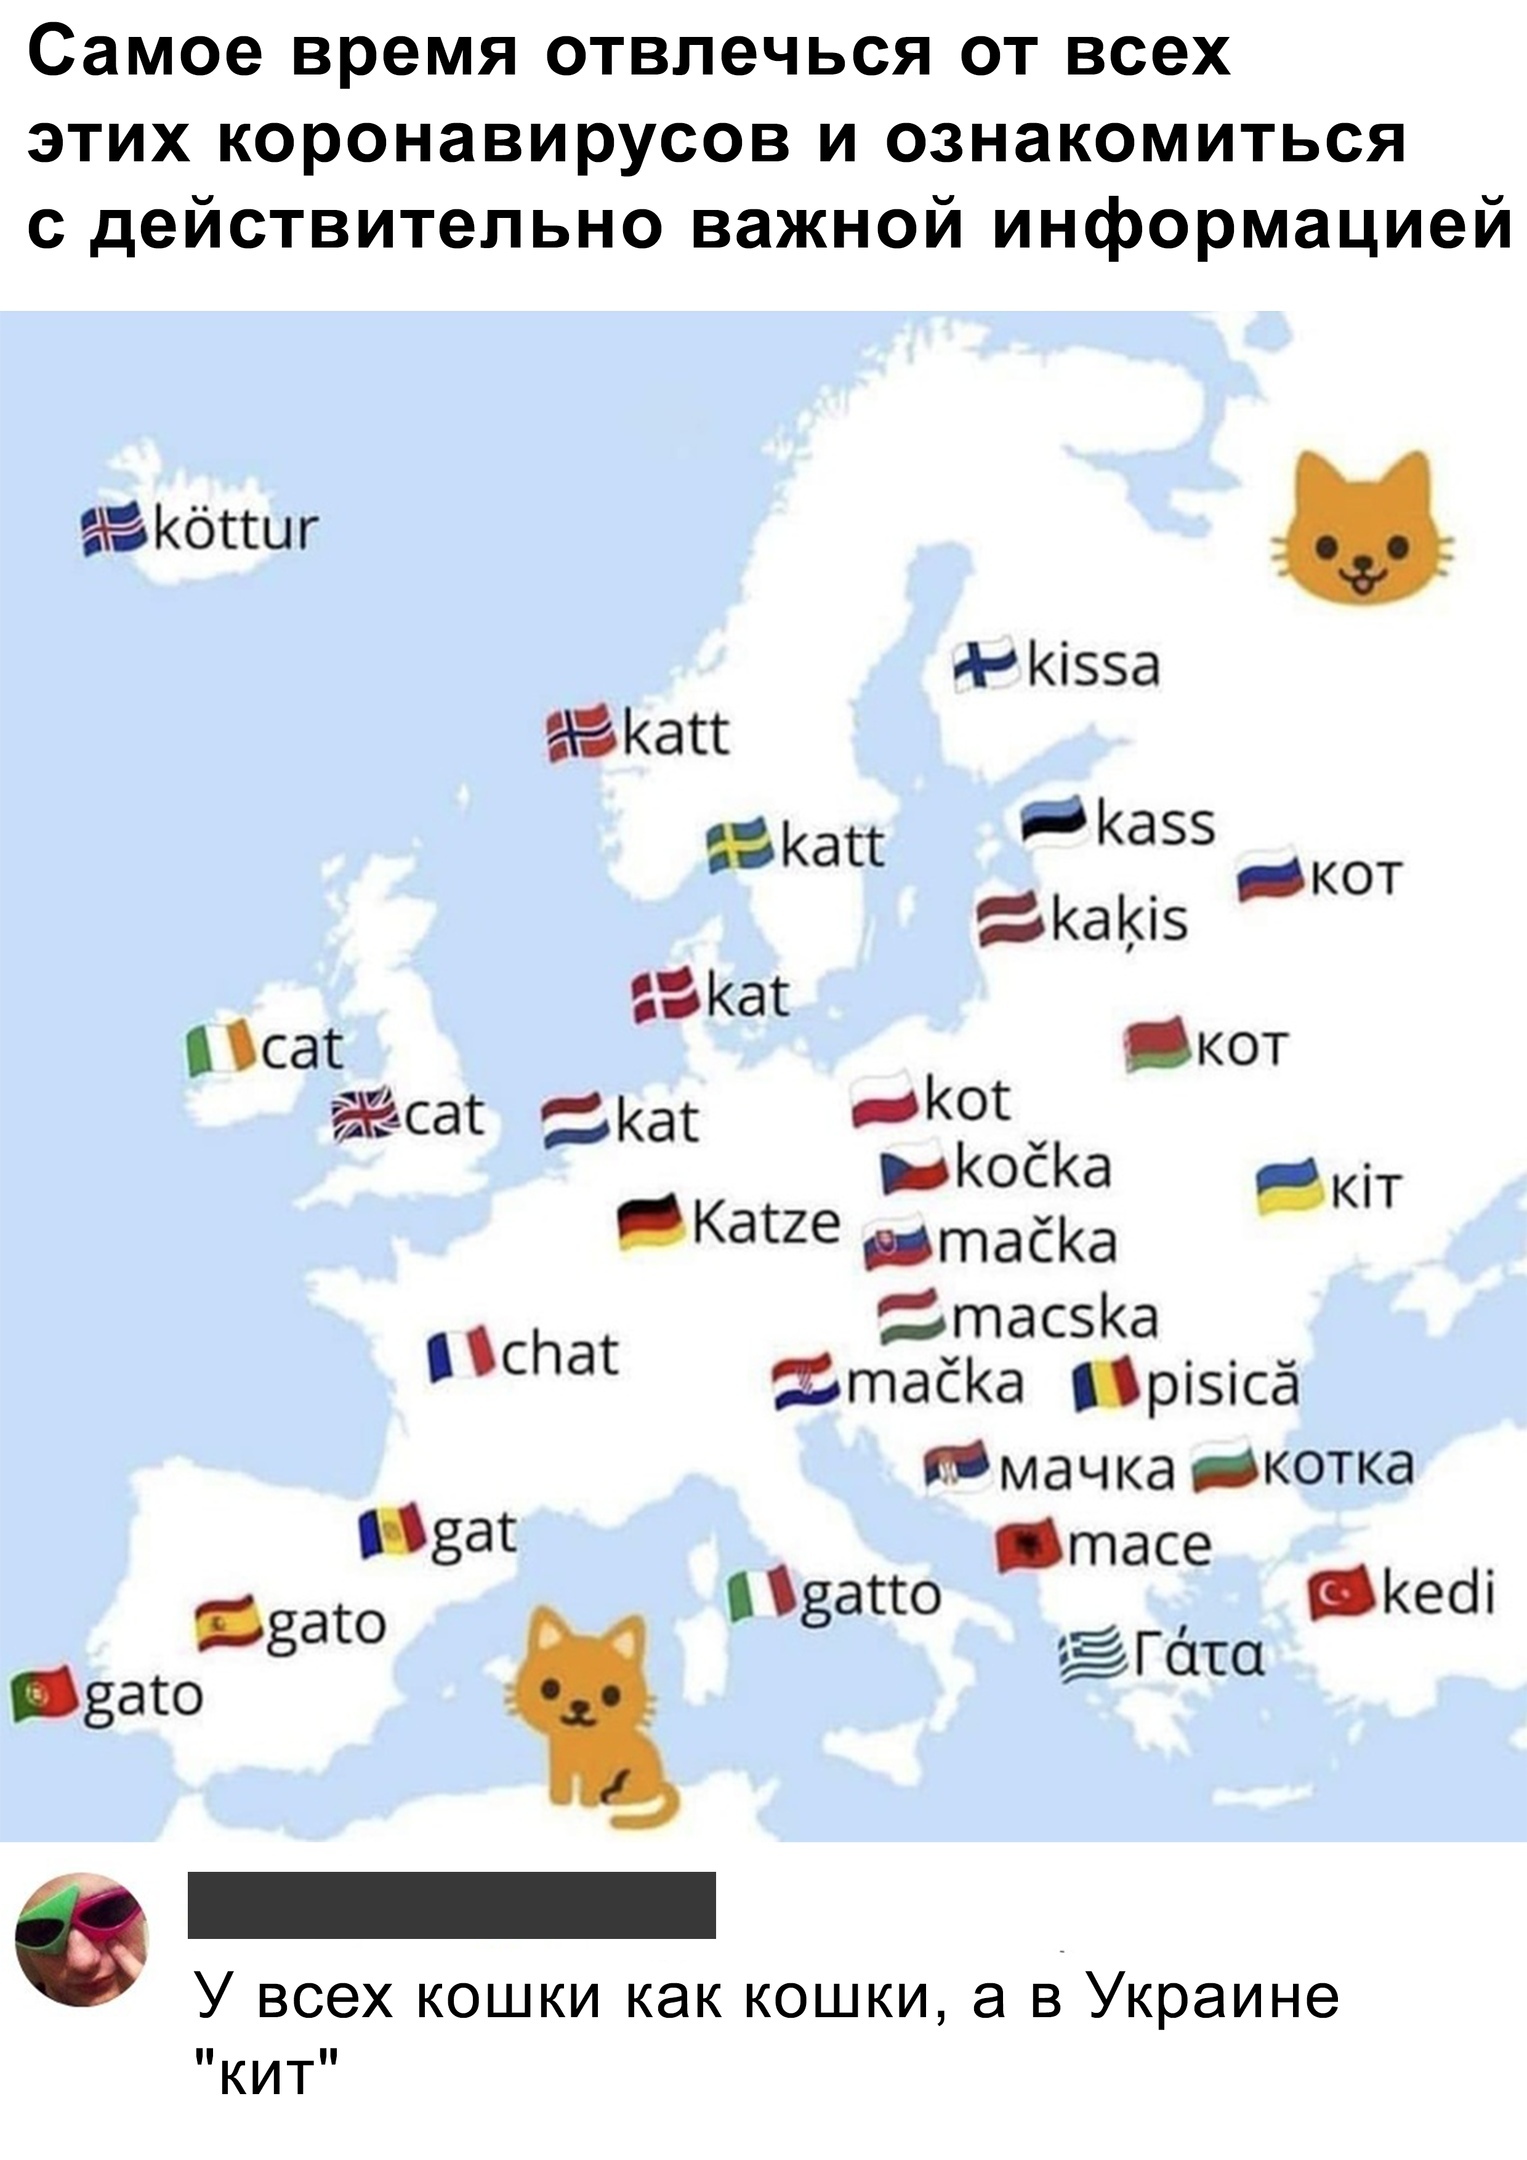 Как называют котов в других странах | Пикабу